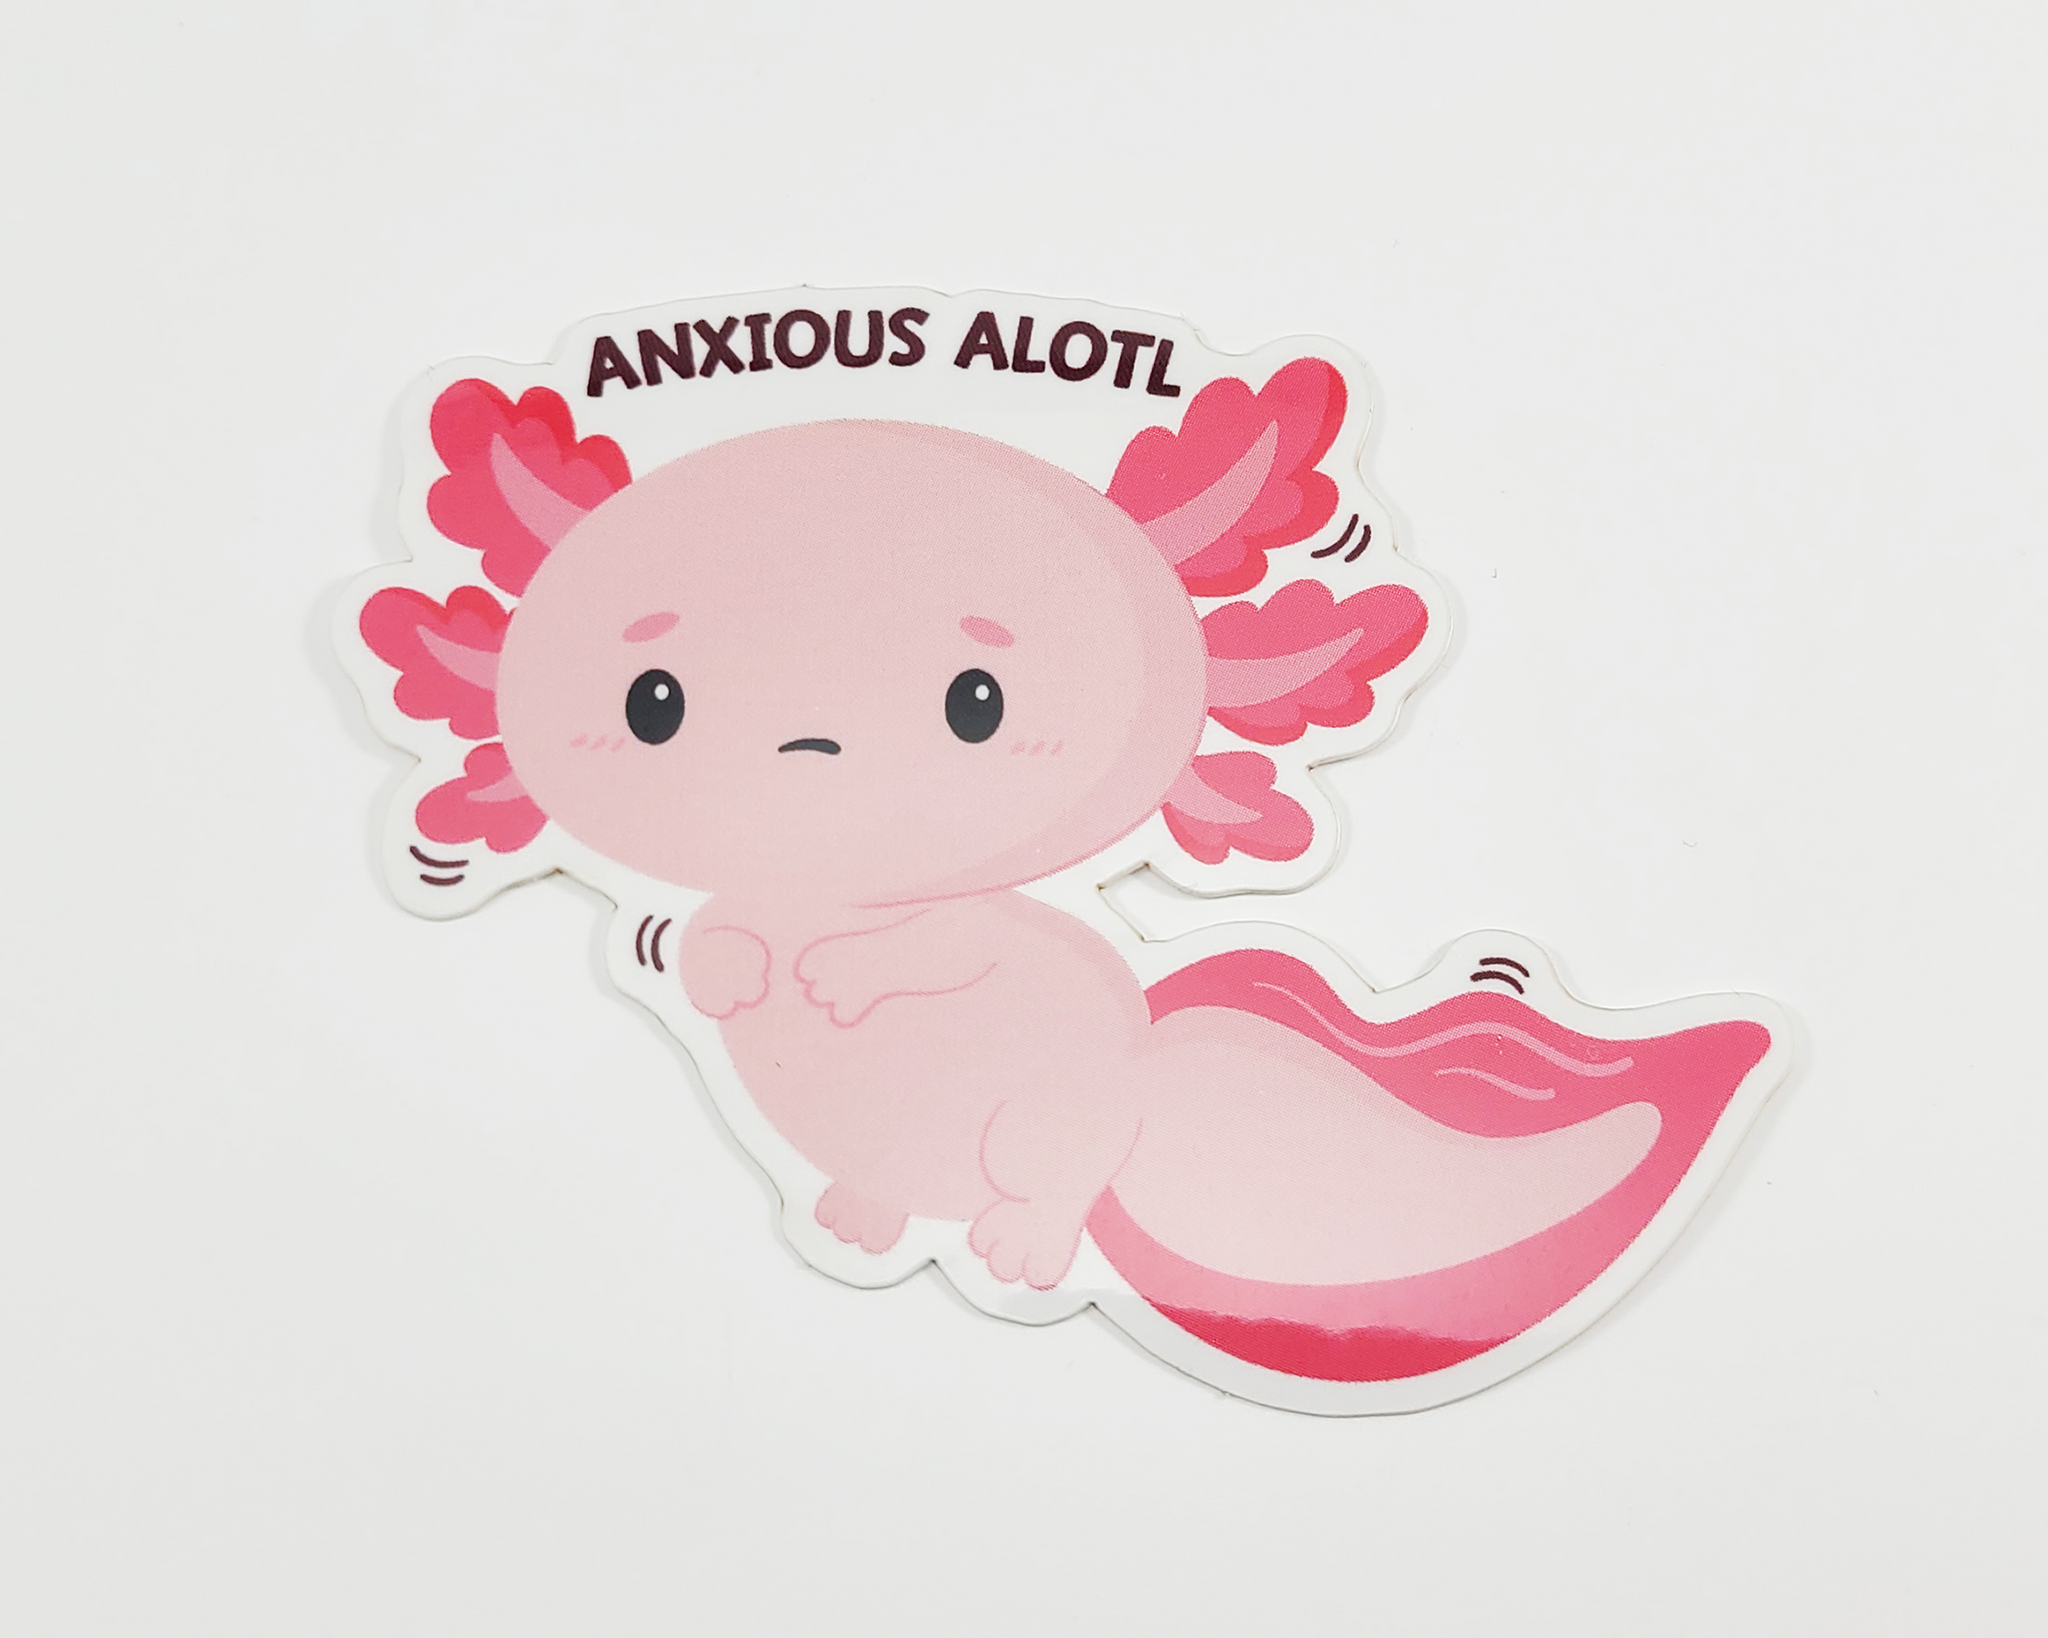 Axolotl Anxious Sticker